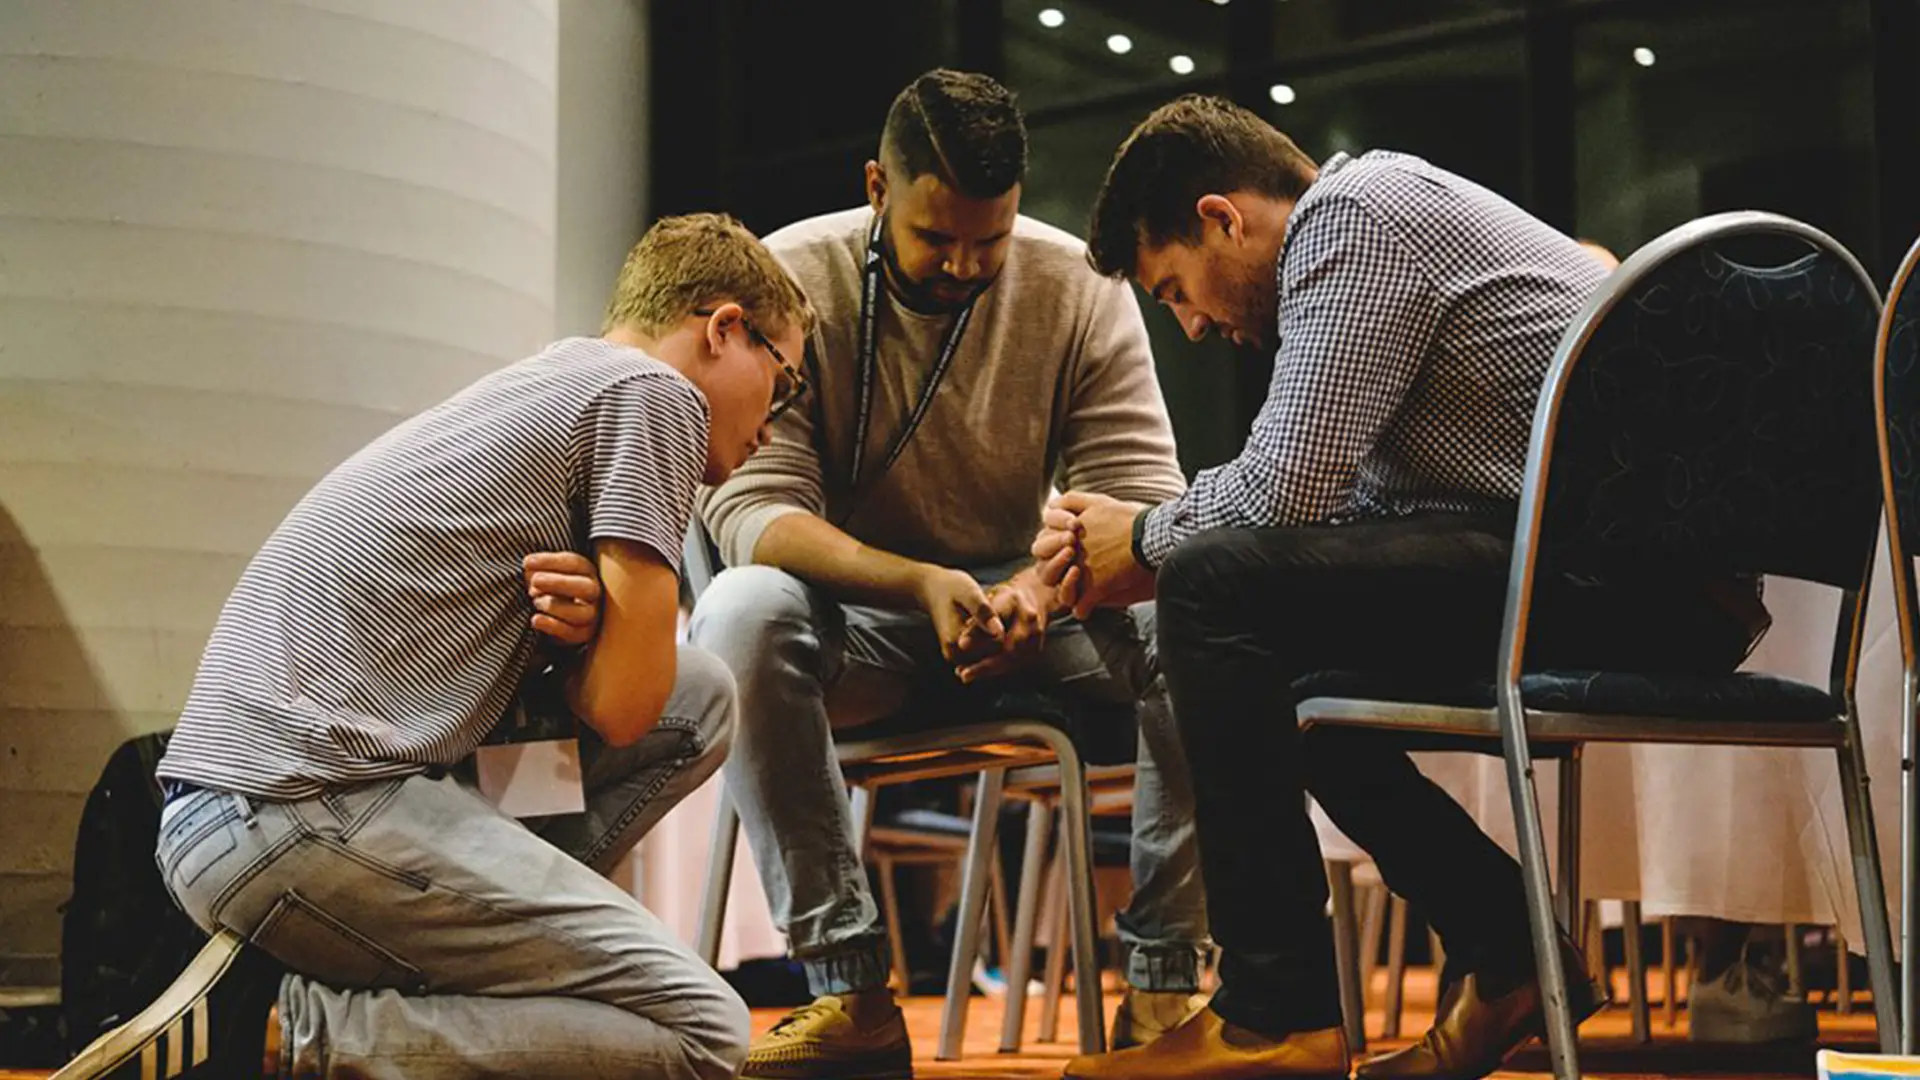 Men praying together